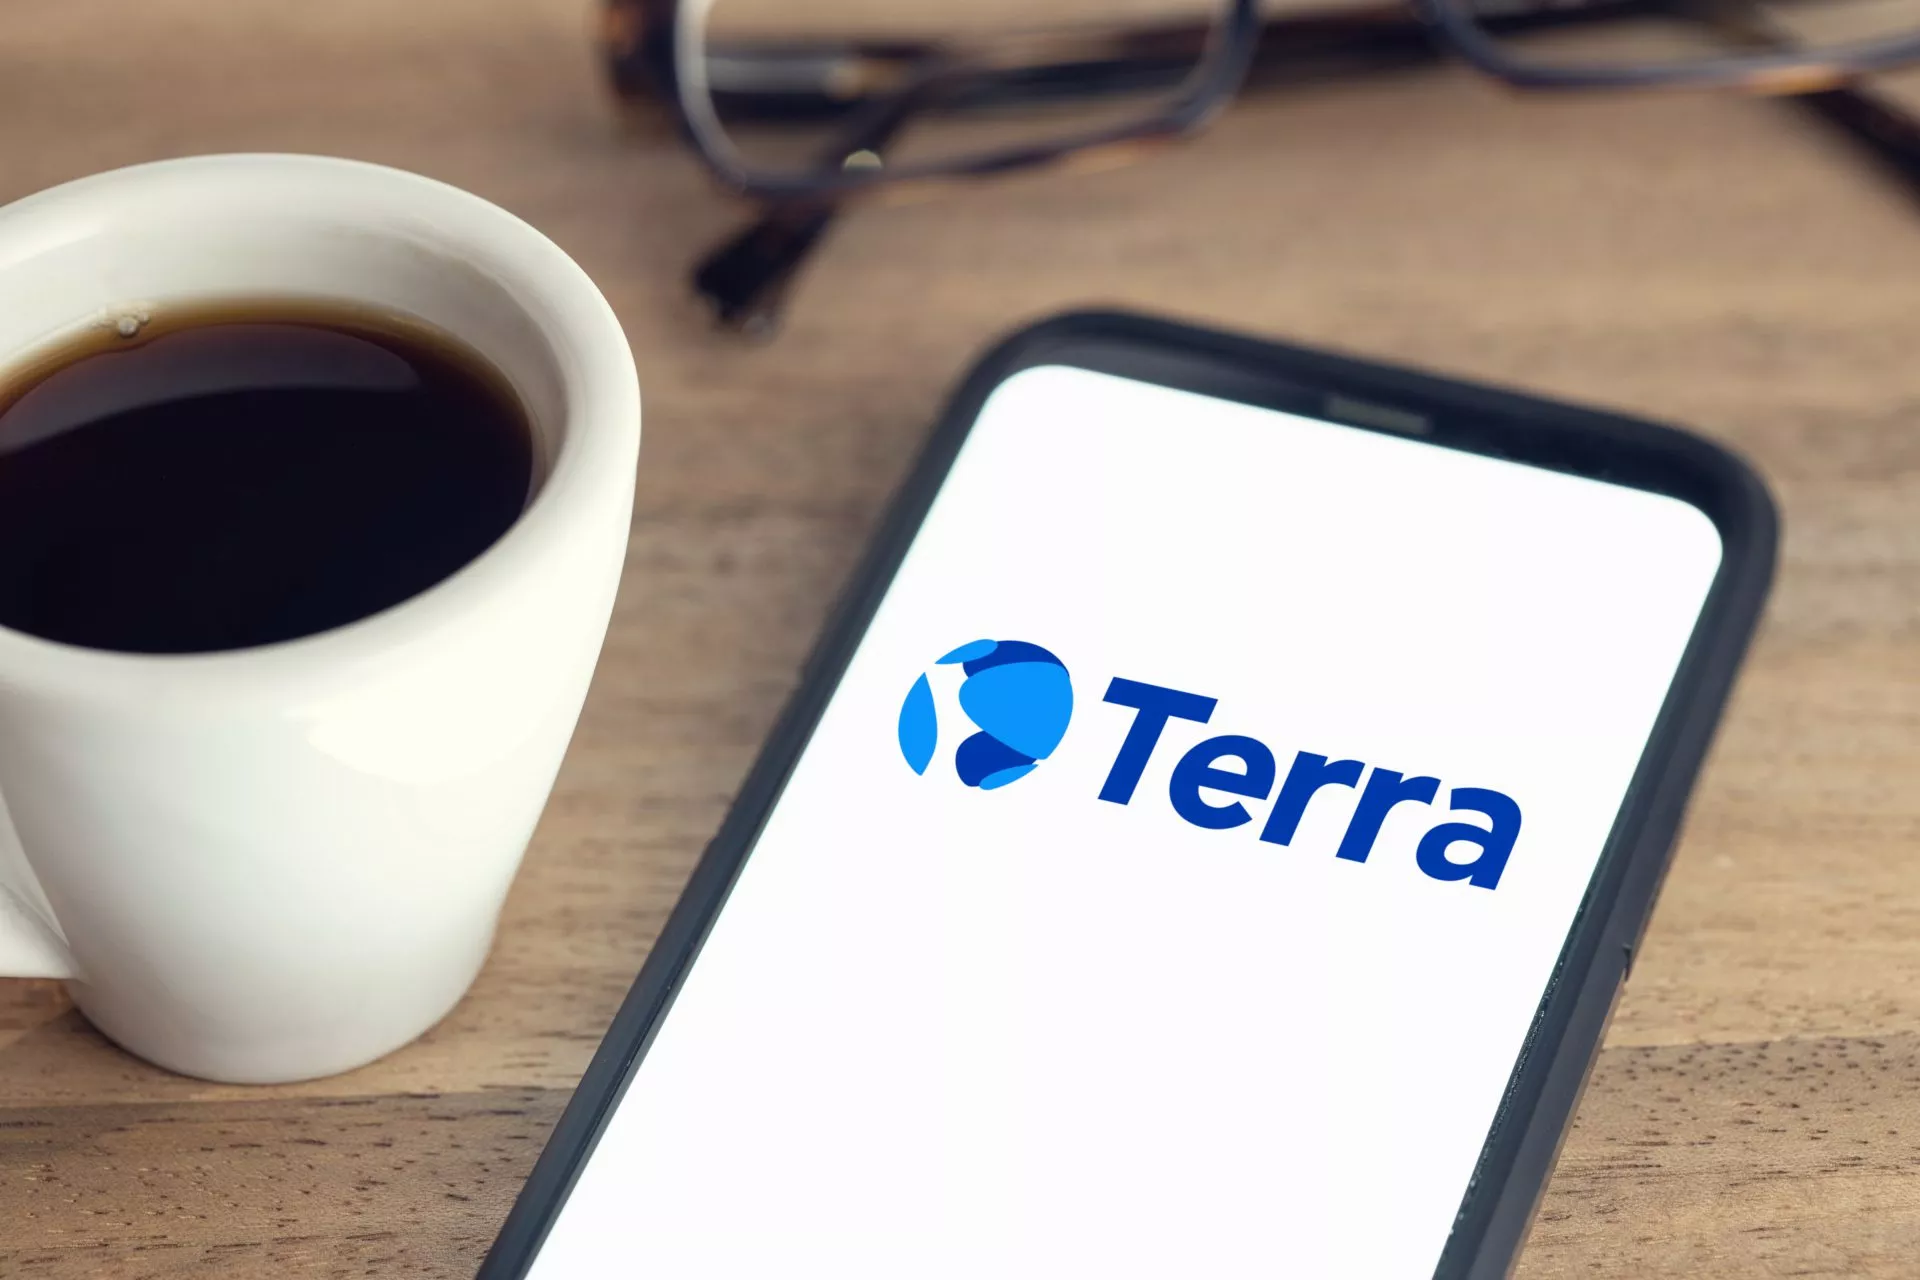 Het juridische team van Terra neemt ontslag